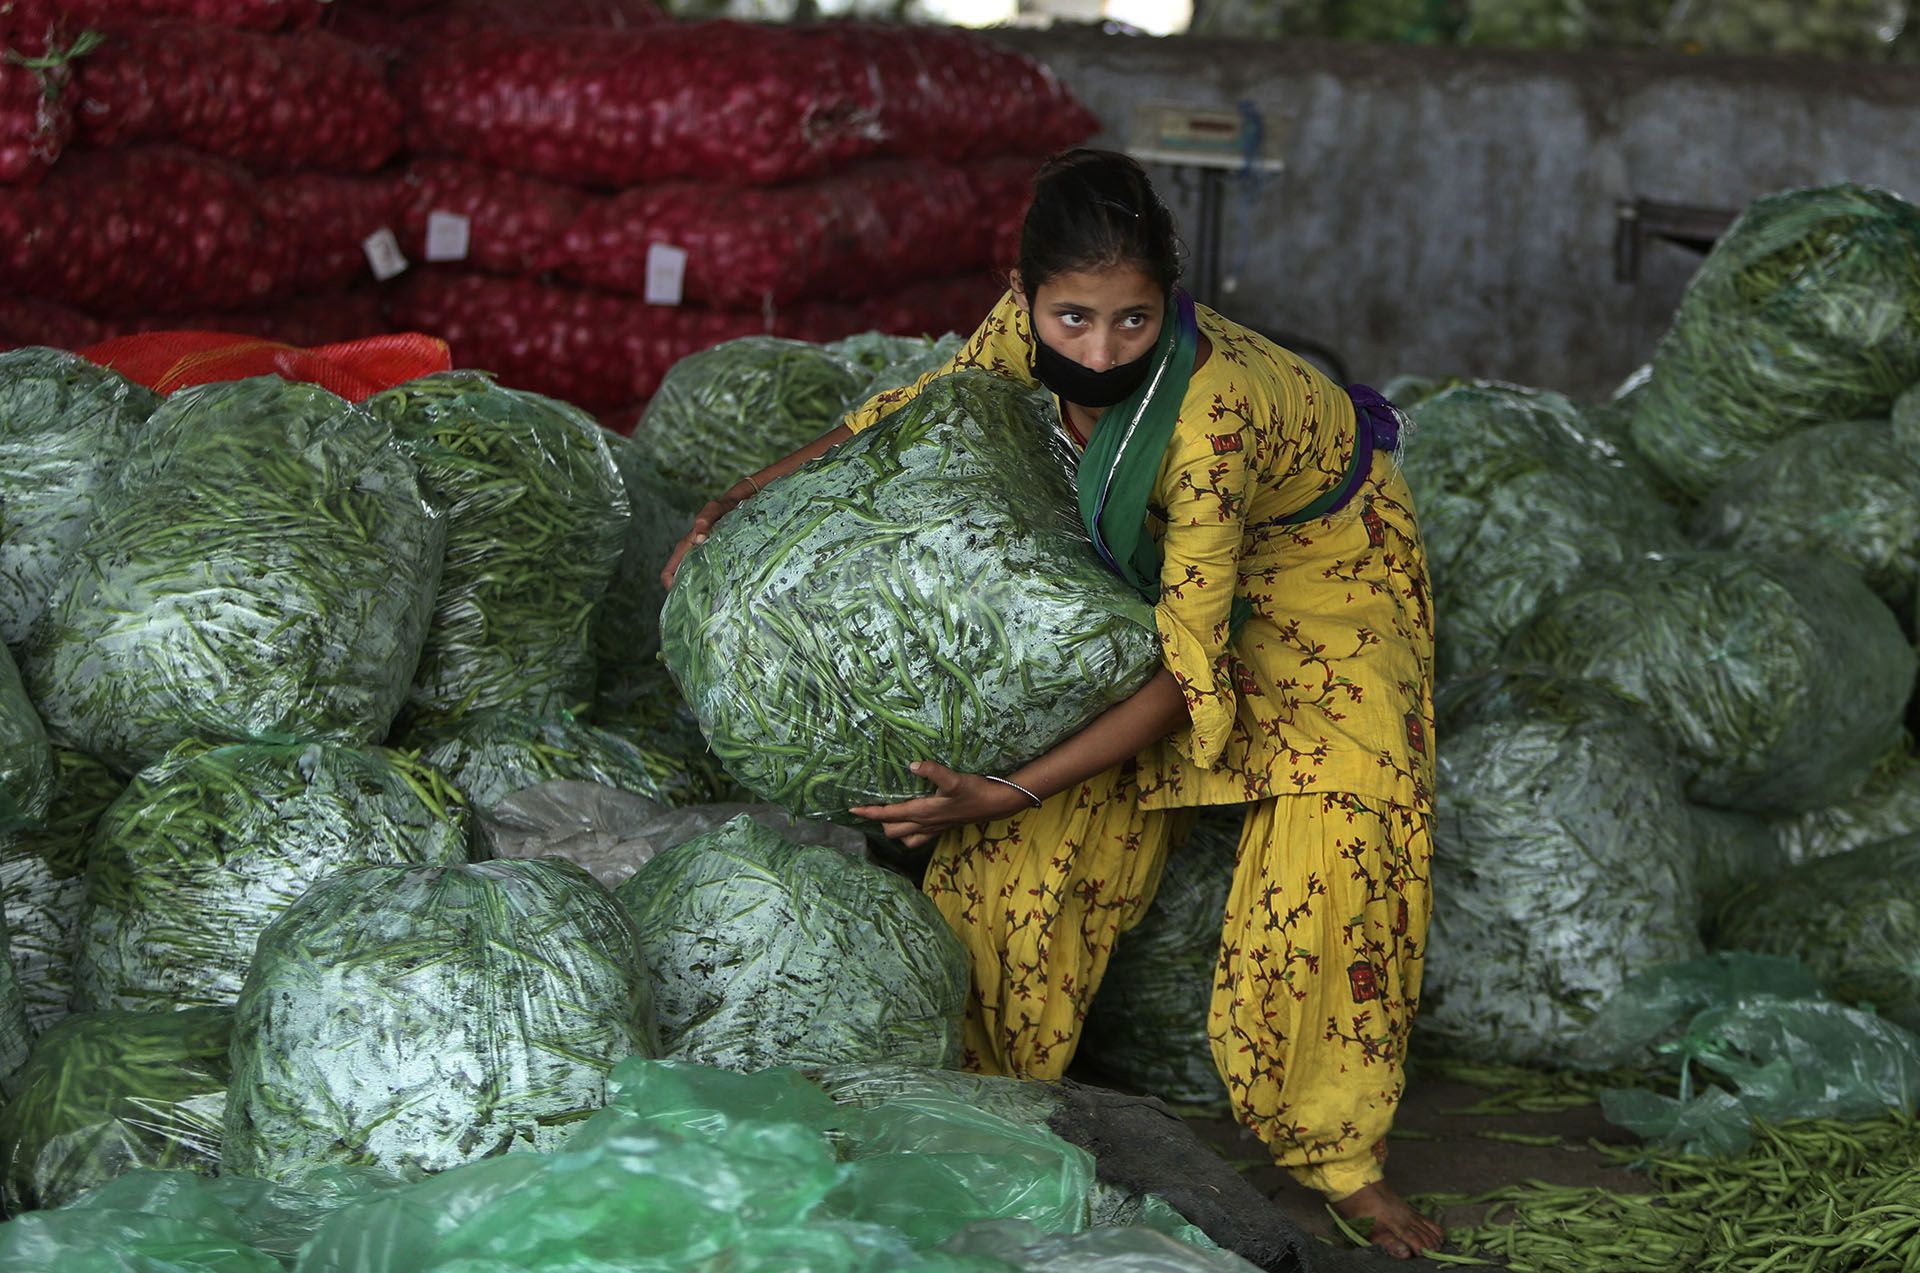 Una niña india trabaja en un mercado mayorista de verduras durante el cierre en Jammu, India, el lunes 20 de abril de 2020 (Foto AP/Channi Anand)